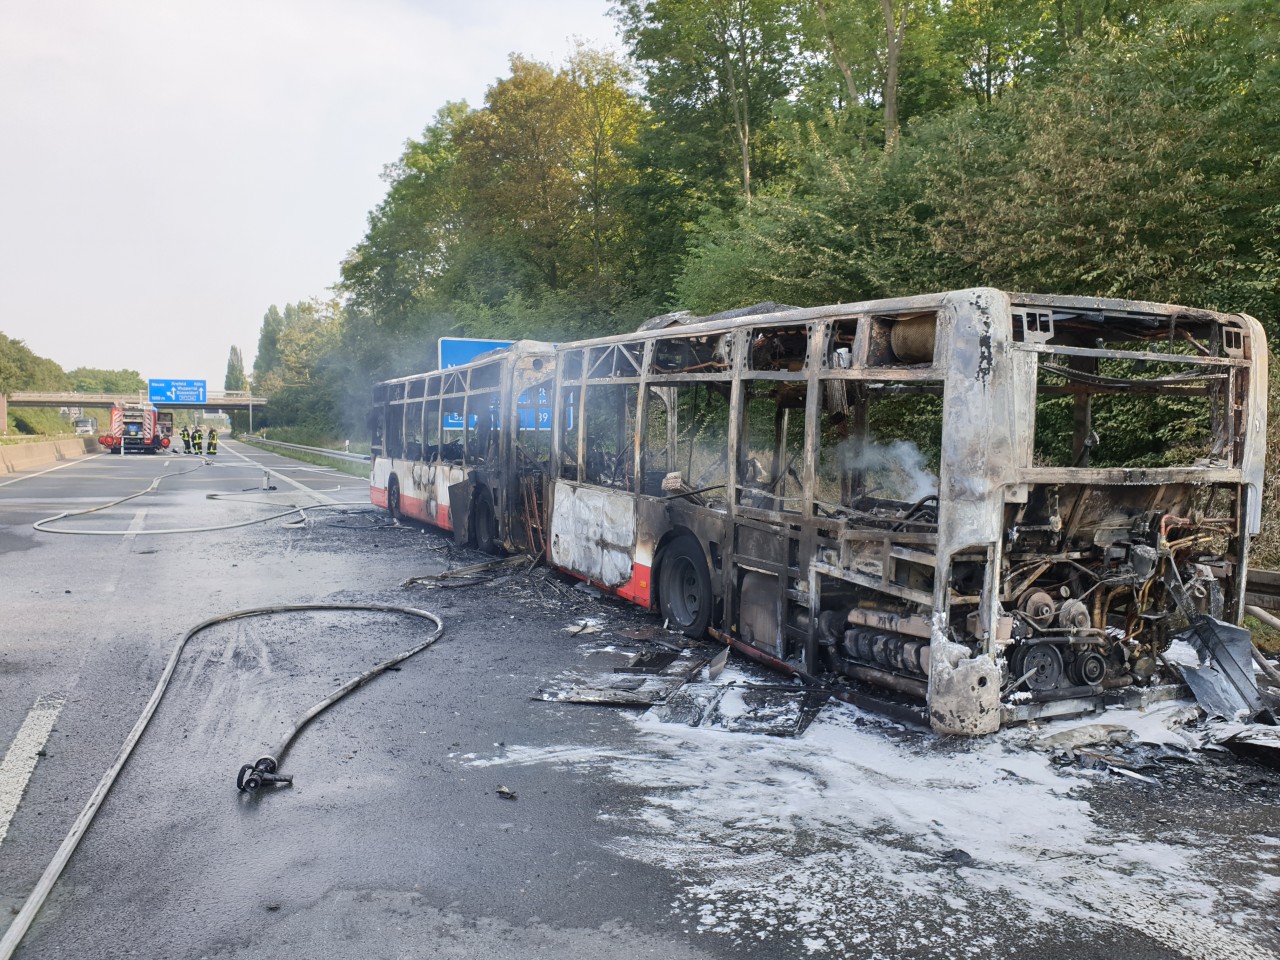 A46 in NRW: In Fahrtrichtung Neuss brannte der Bus. Der Fahrer konnte sich retten. 